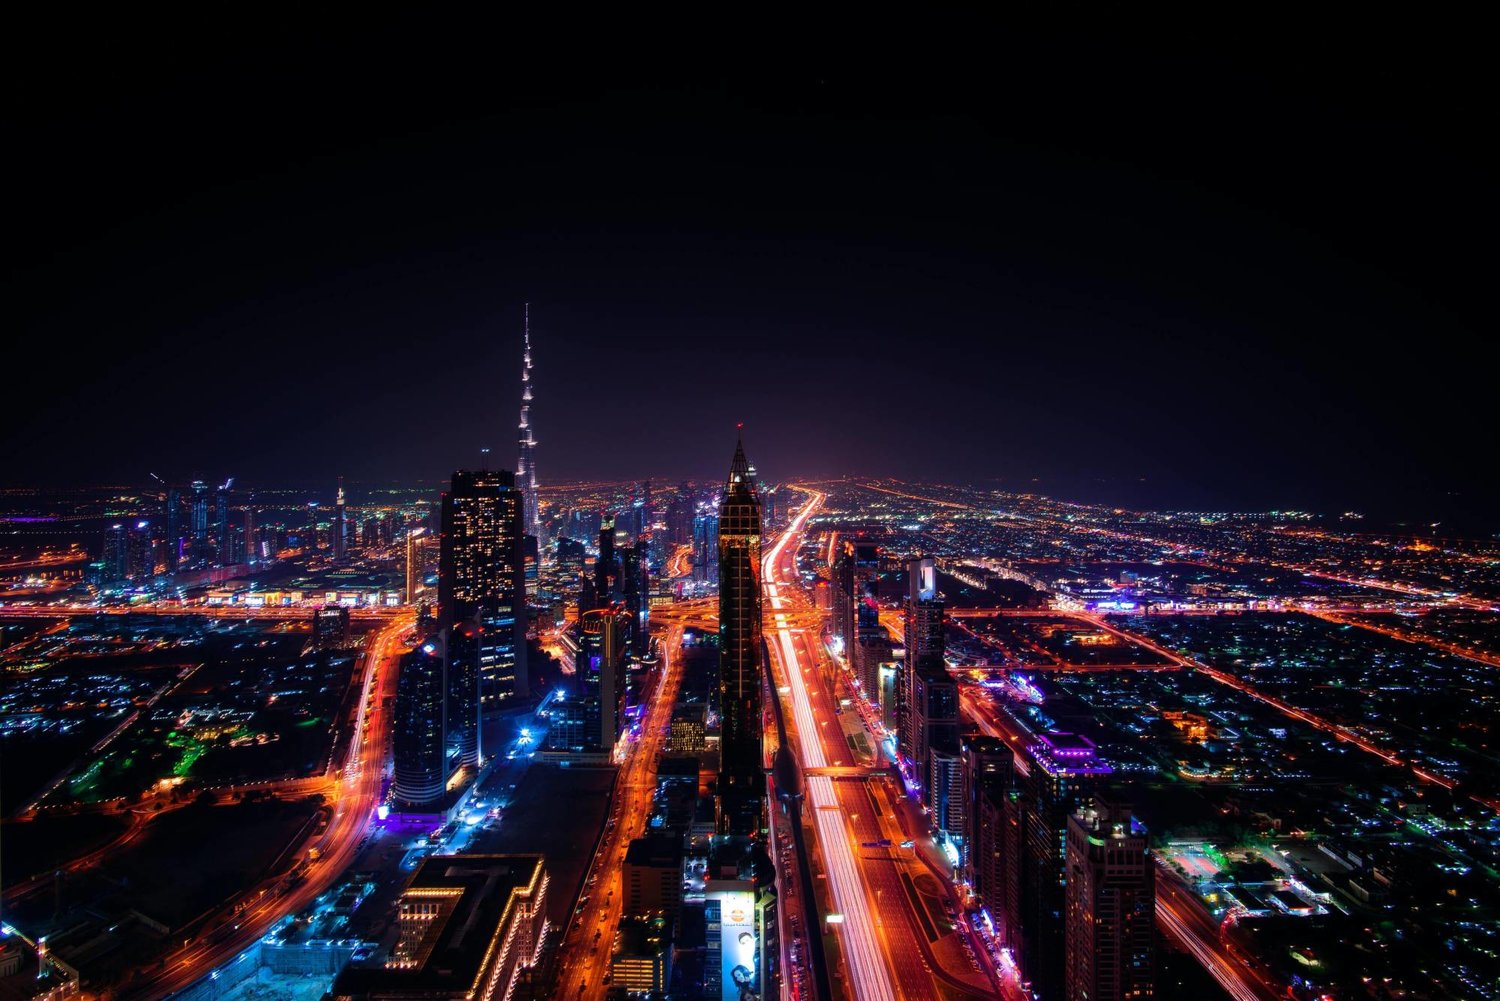 اتبعت دبي خطة الإنفاق الرشيد على المشاريع وتحسين الإيرادات وتنويعها مما ساعدها على الوفاء بالتزاماتها المالية (الشرق الأوسط)